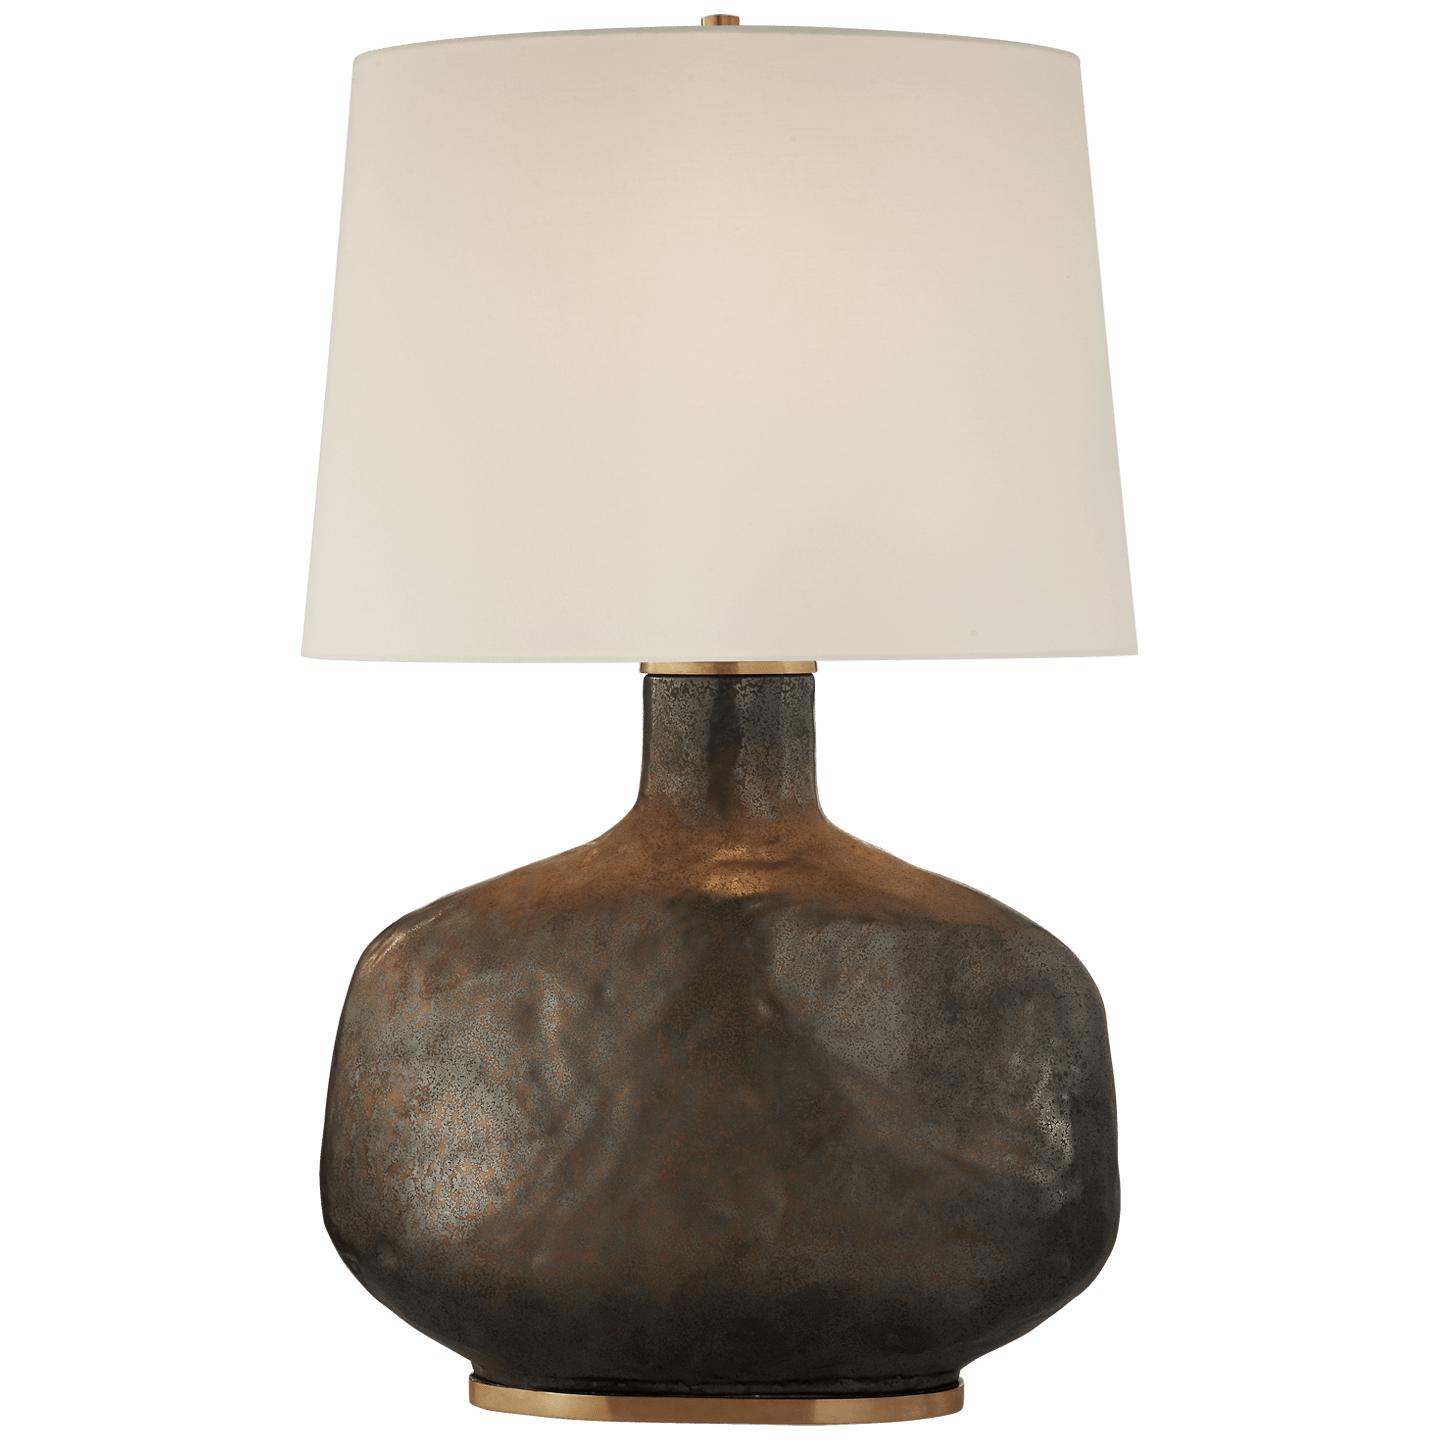 Купить Настольная лампа Beton Large Table Lamp в интернет-магазине roooms.ru